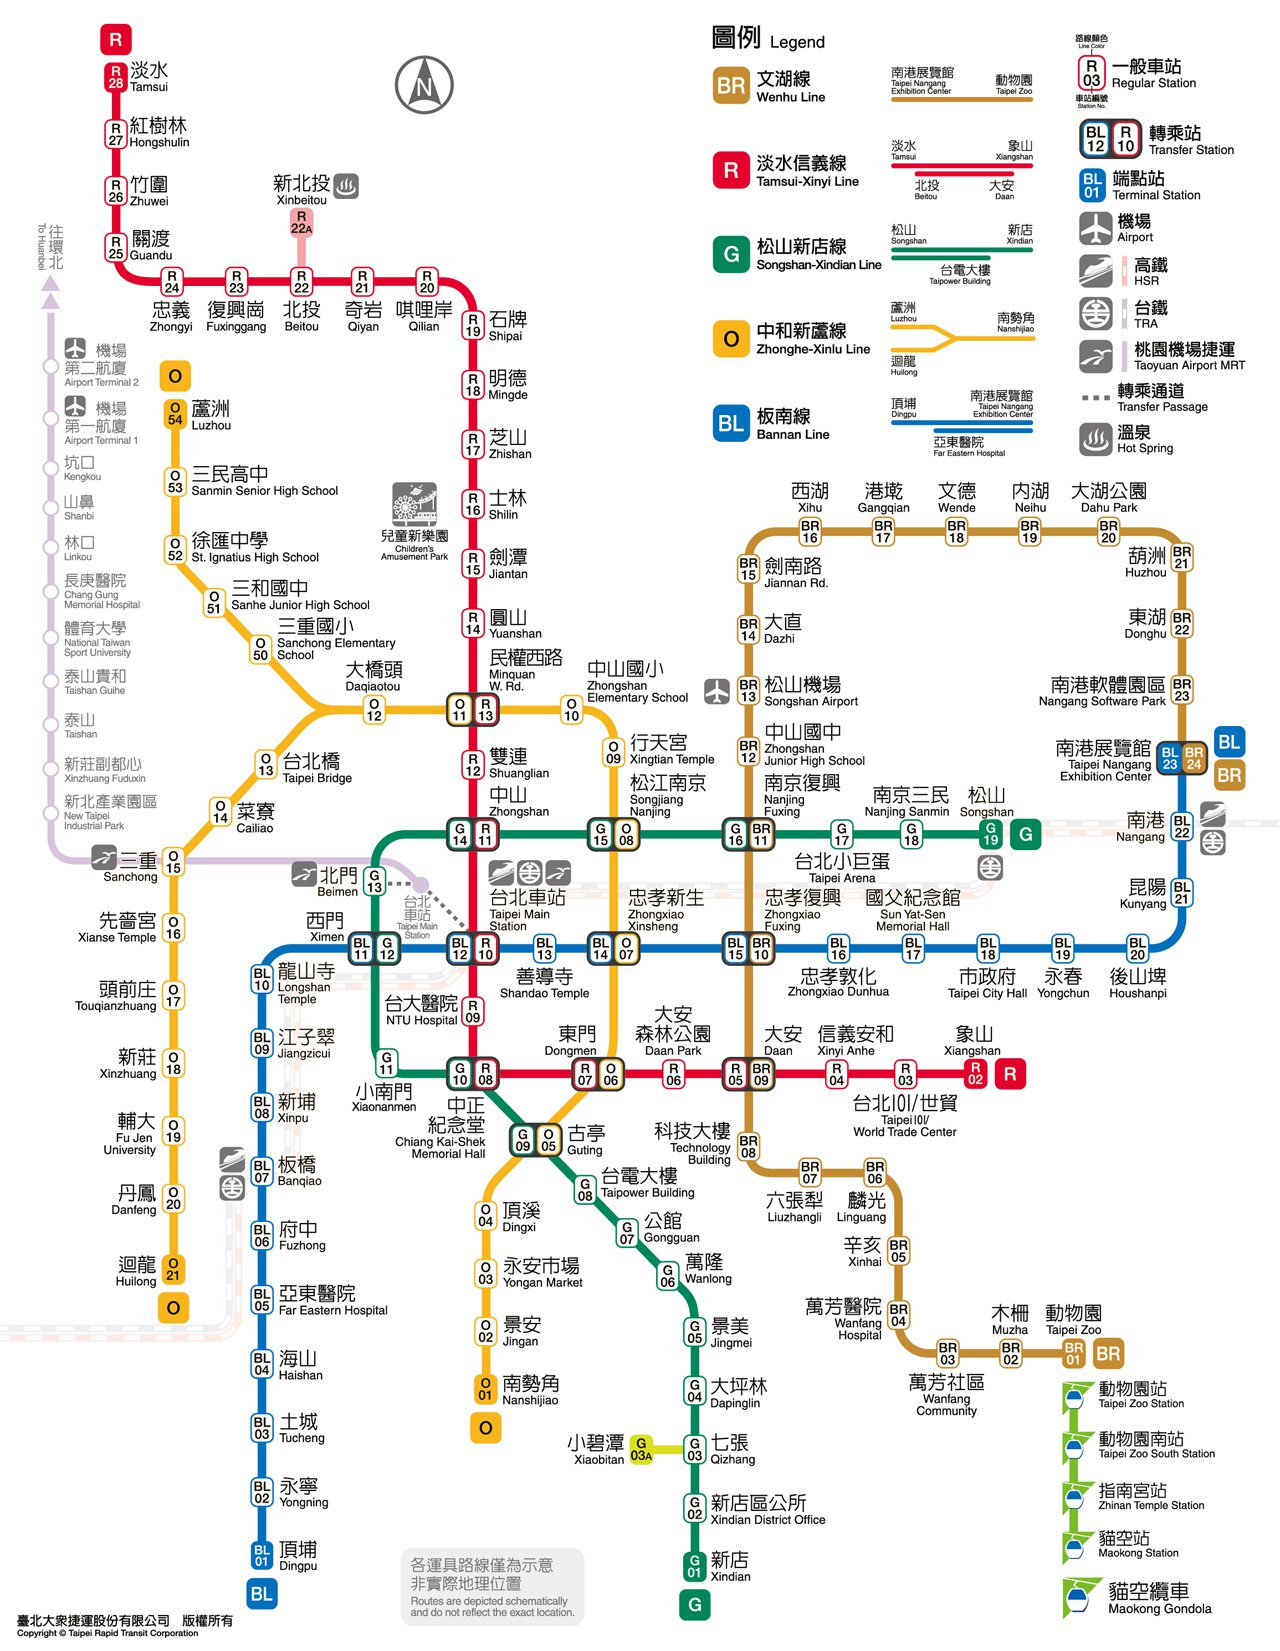 타이페이 지하철 중국어, 영문 노선도 <br />(클릭하여 확대 및 드래그 가능)